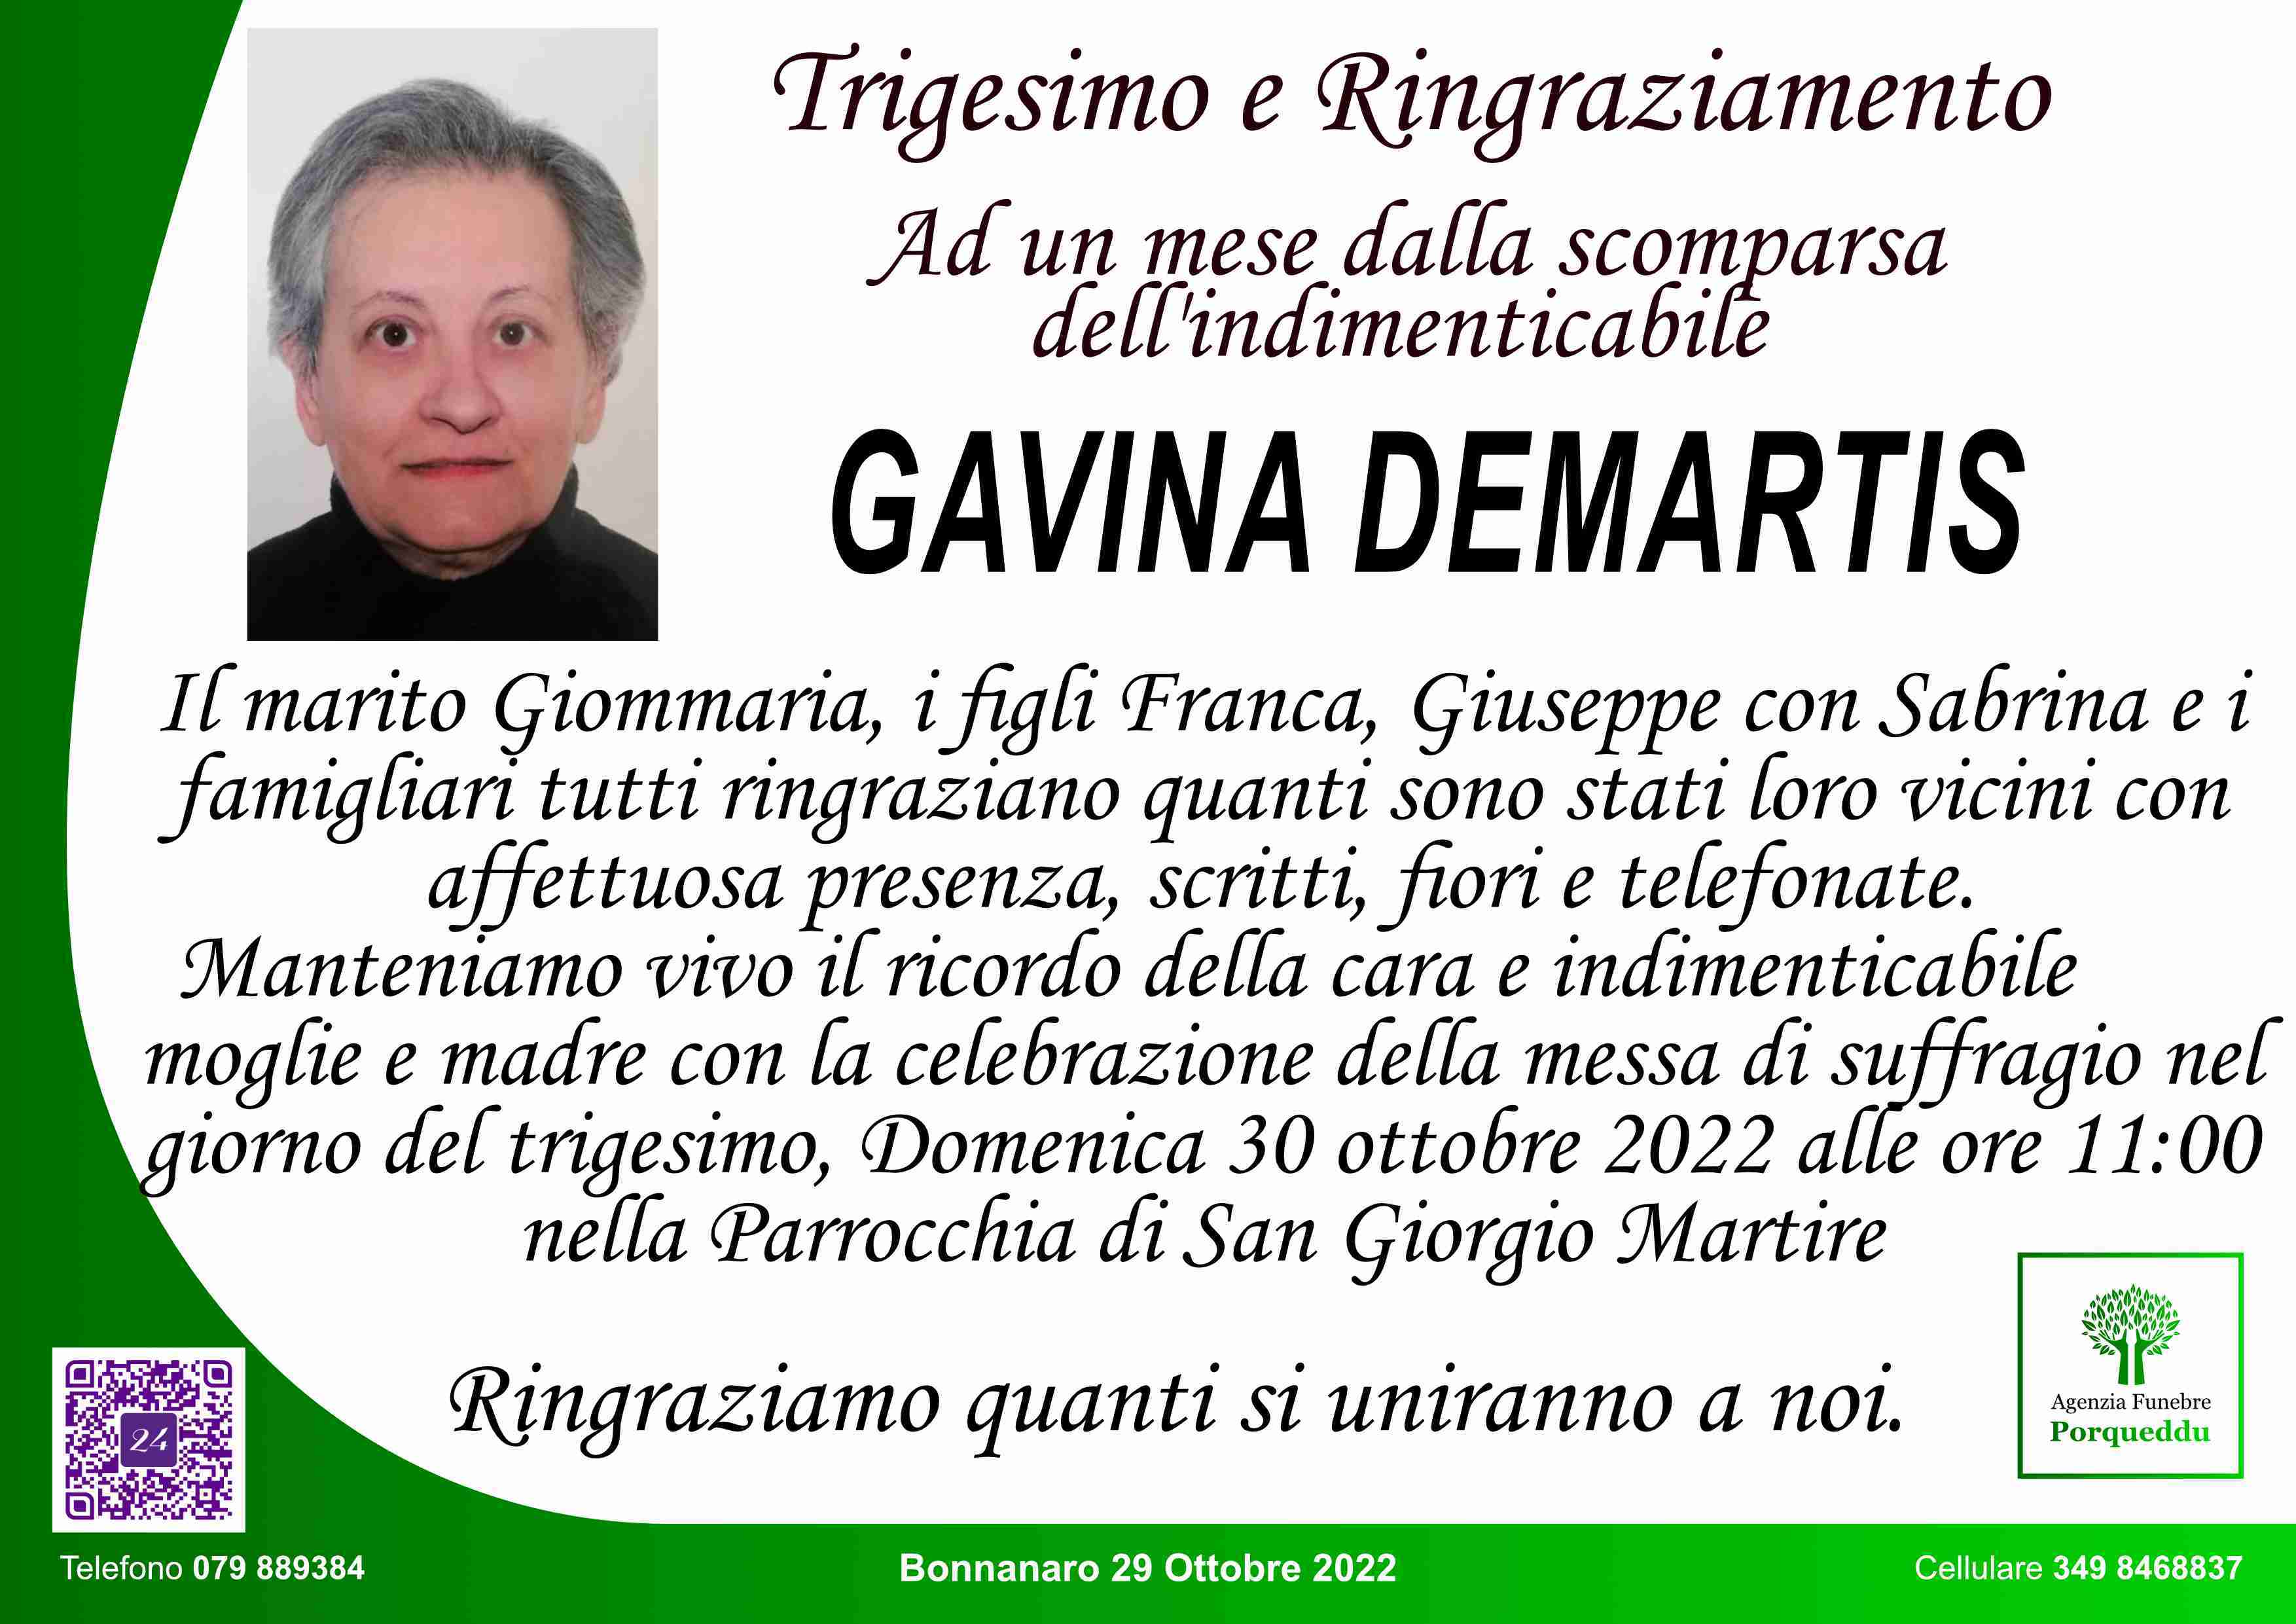 Gavina Demartis